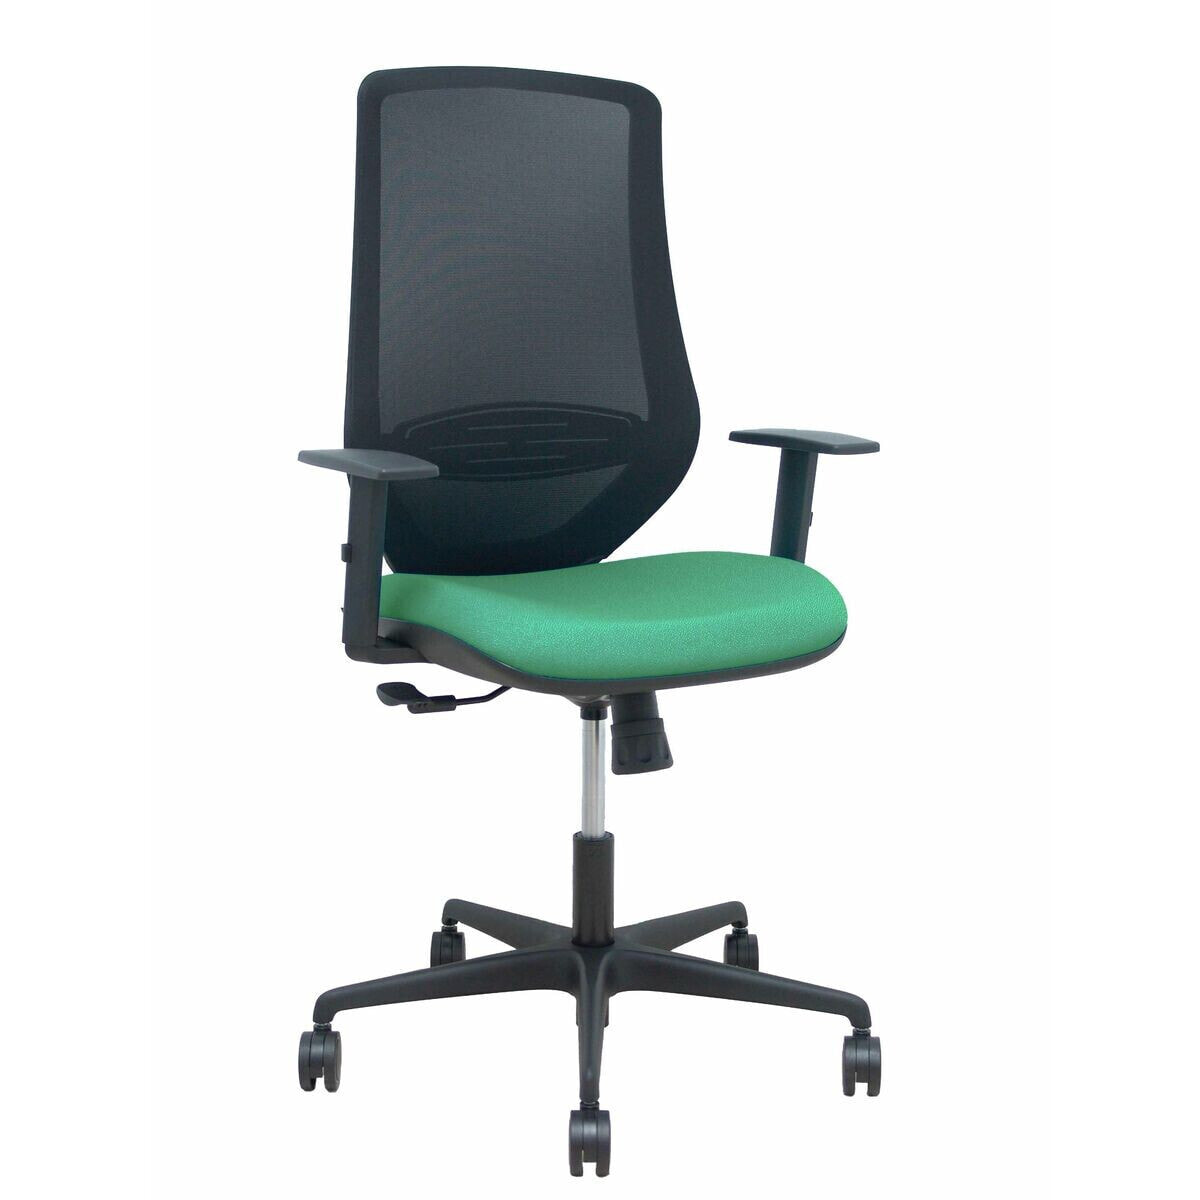 Офисный стул Mardos P&C 0B68R65 Изумрудный зеленый